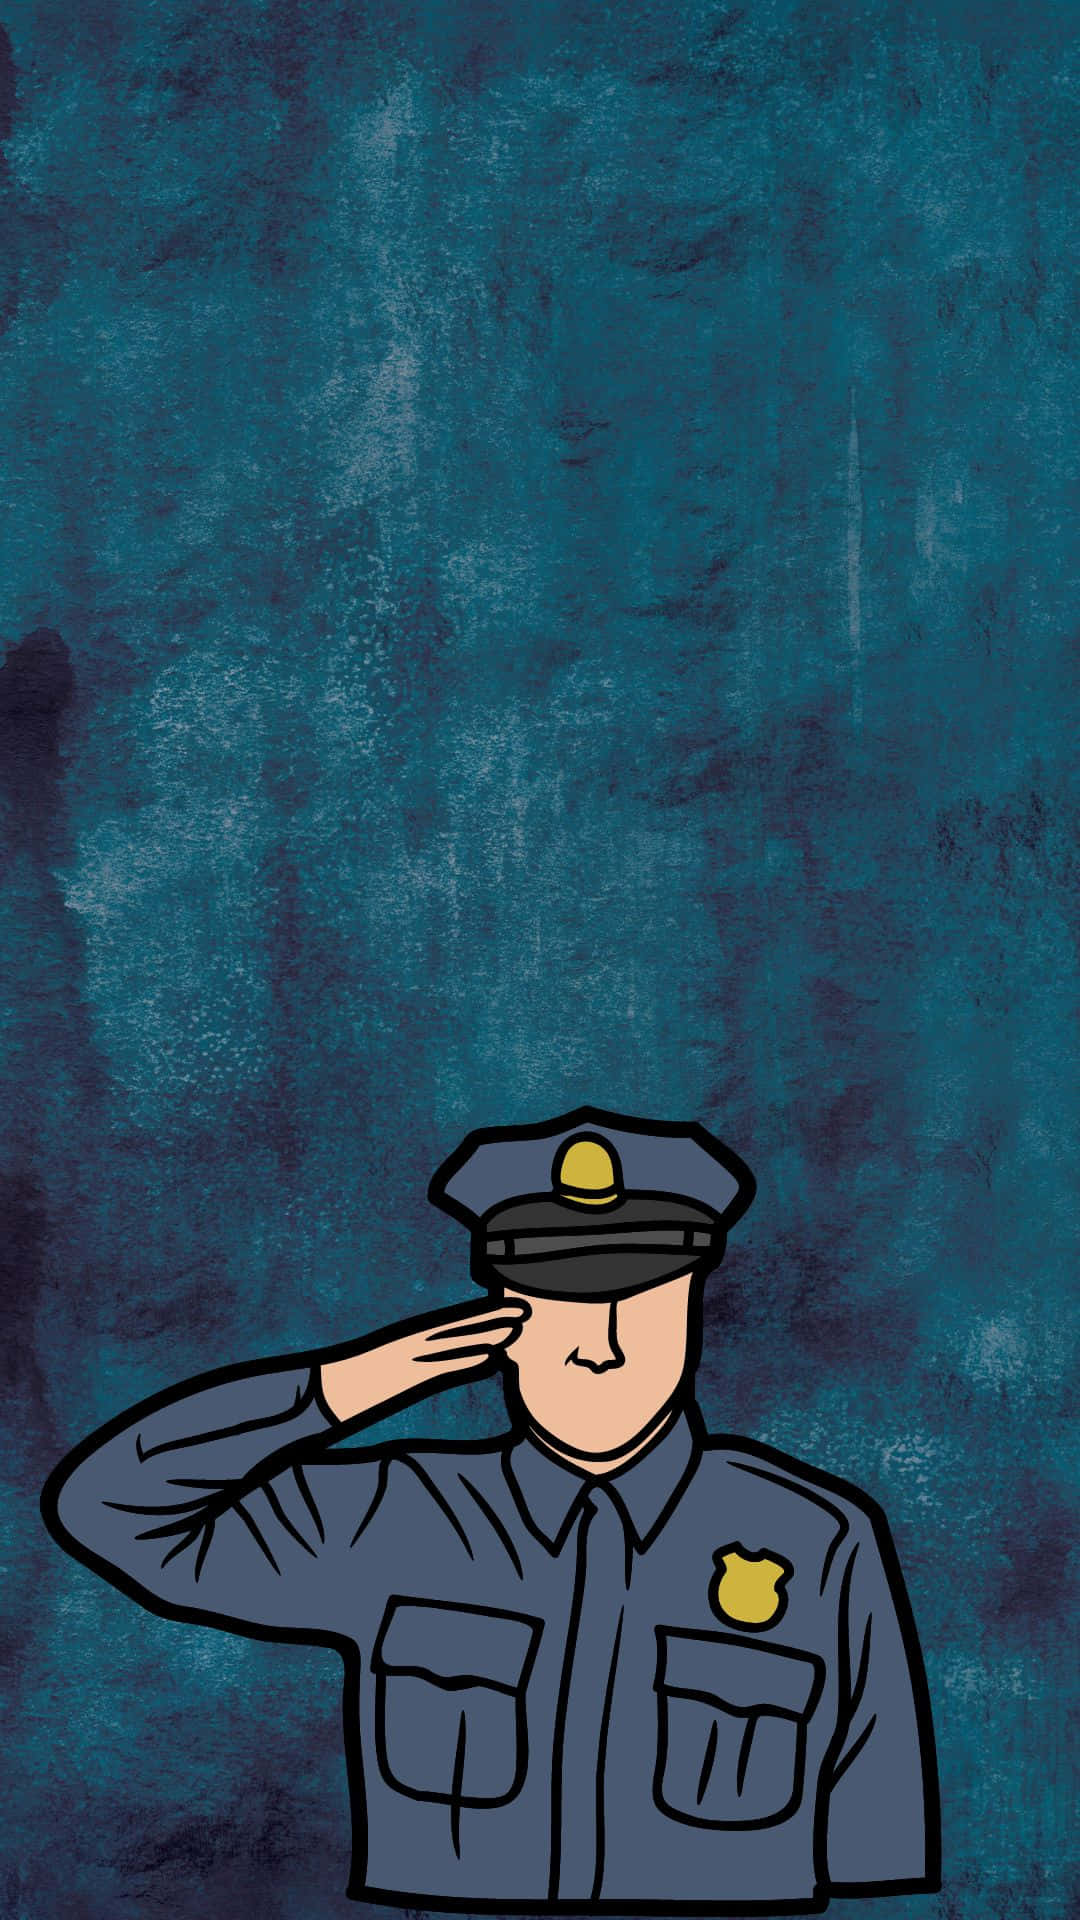 Artevetorial Digital De Um Policial Cumprimentando. Papel de Parede